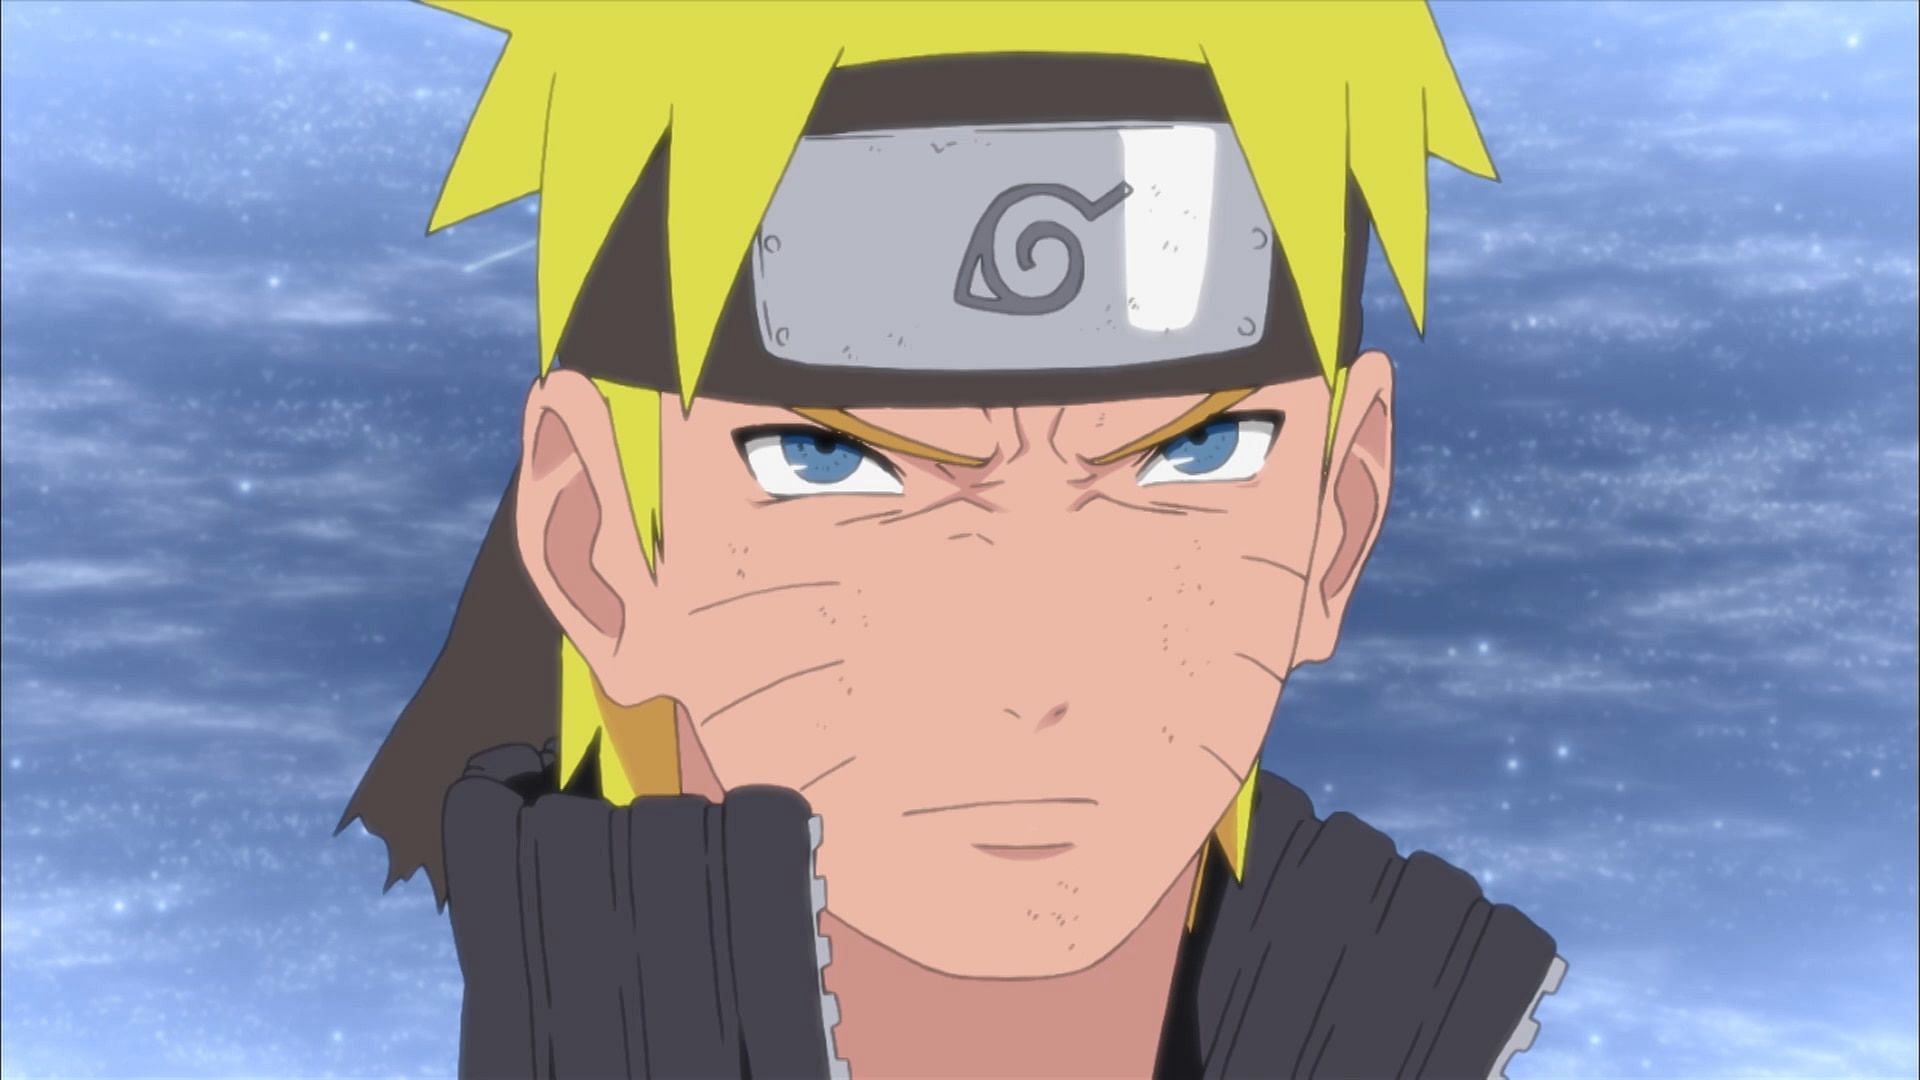 Naruto Uzumaki as seen in the Naruto anime series (Image via Studio Pierrot)